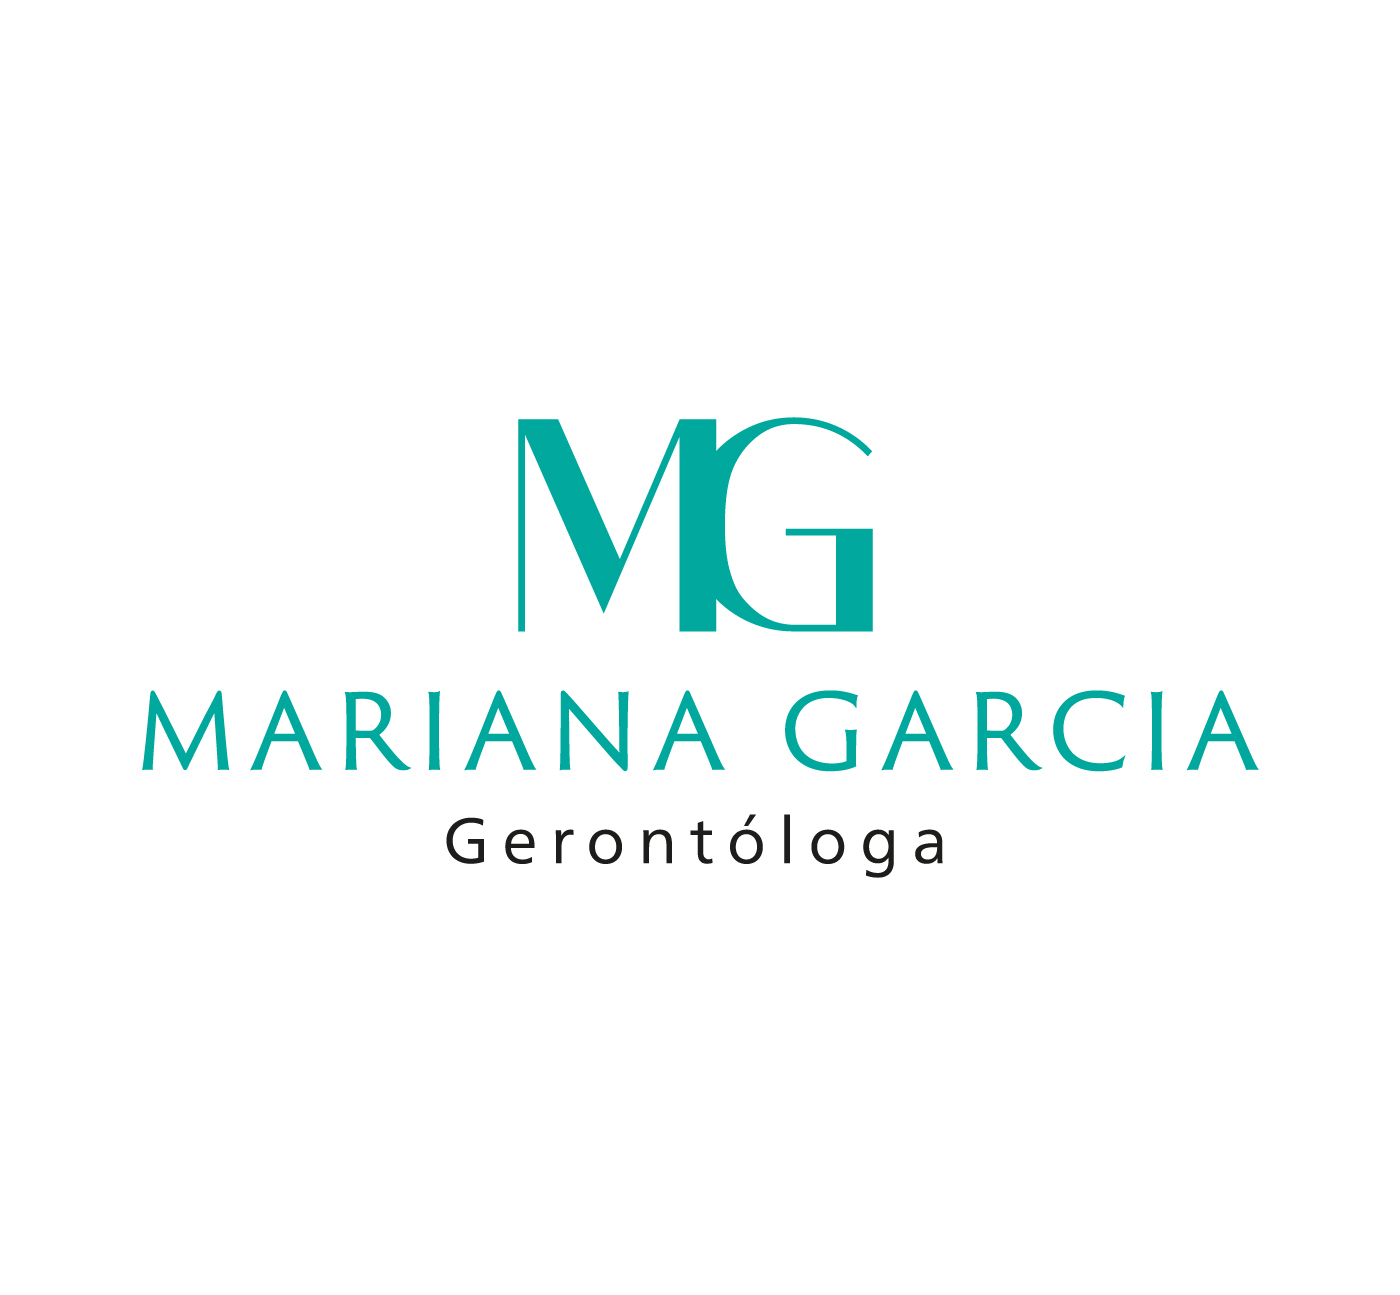 Mariana Garcia Gerontóloga